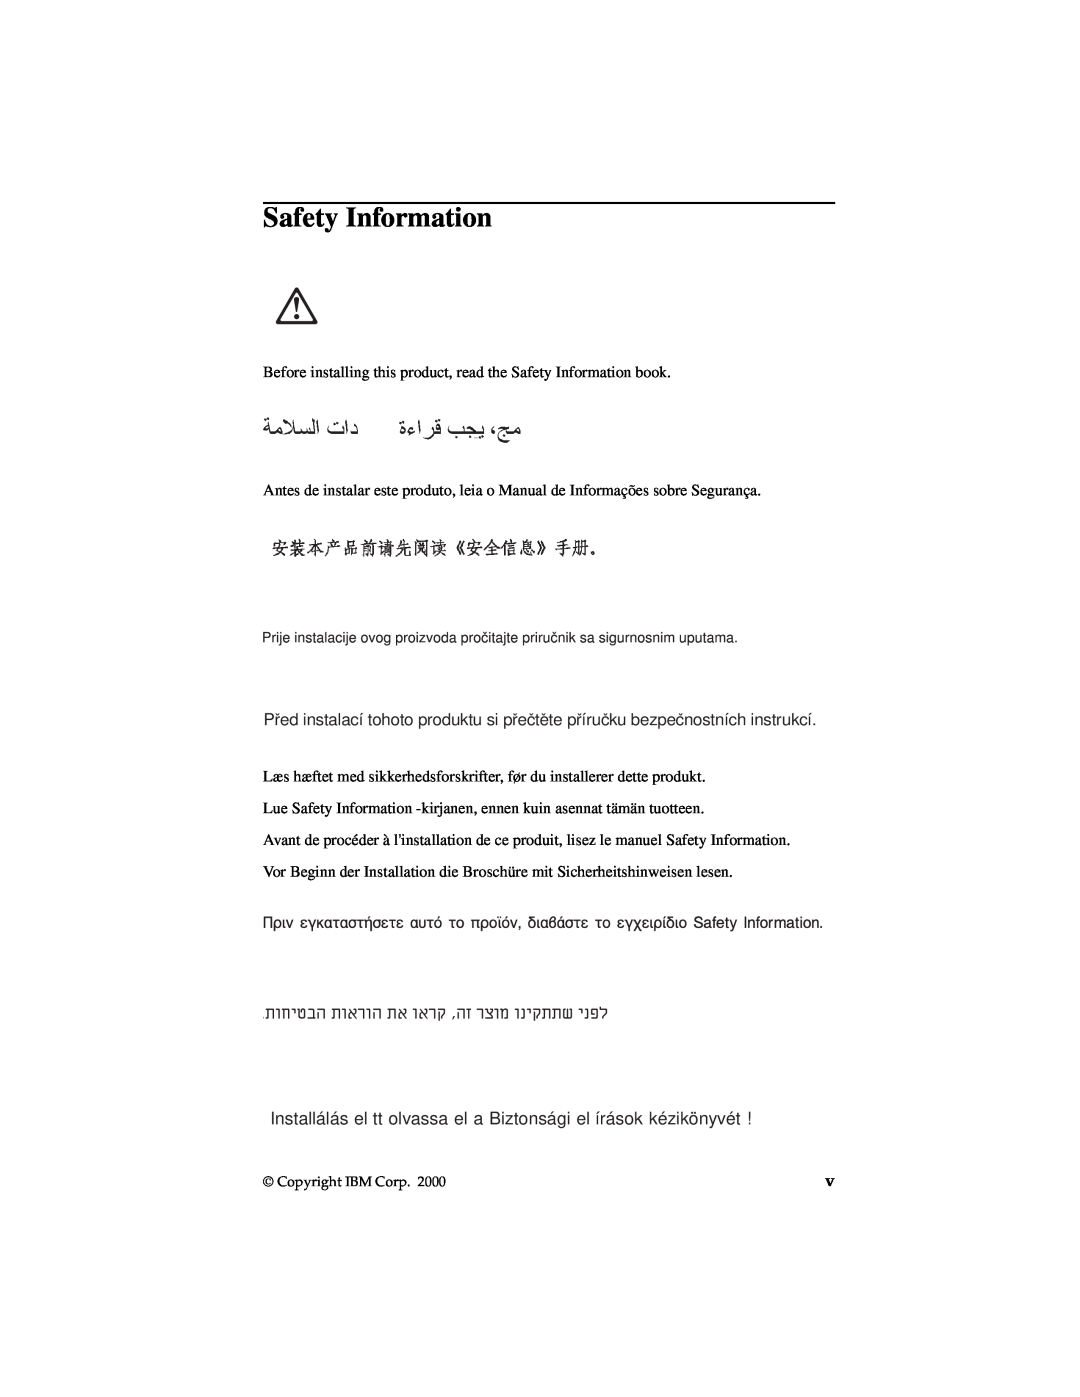 IBM 19K4543 manual Safety Information, Installálás el tt olvassa el a Biztonsági el írások kéziköny 